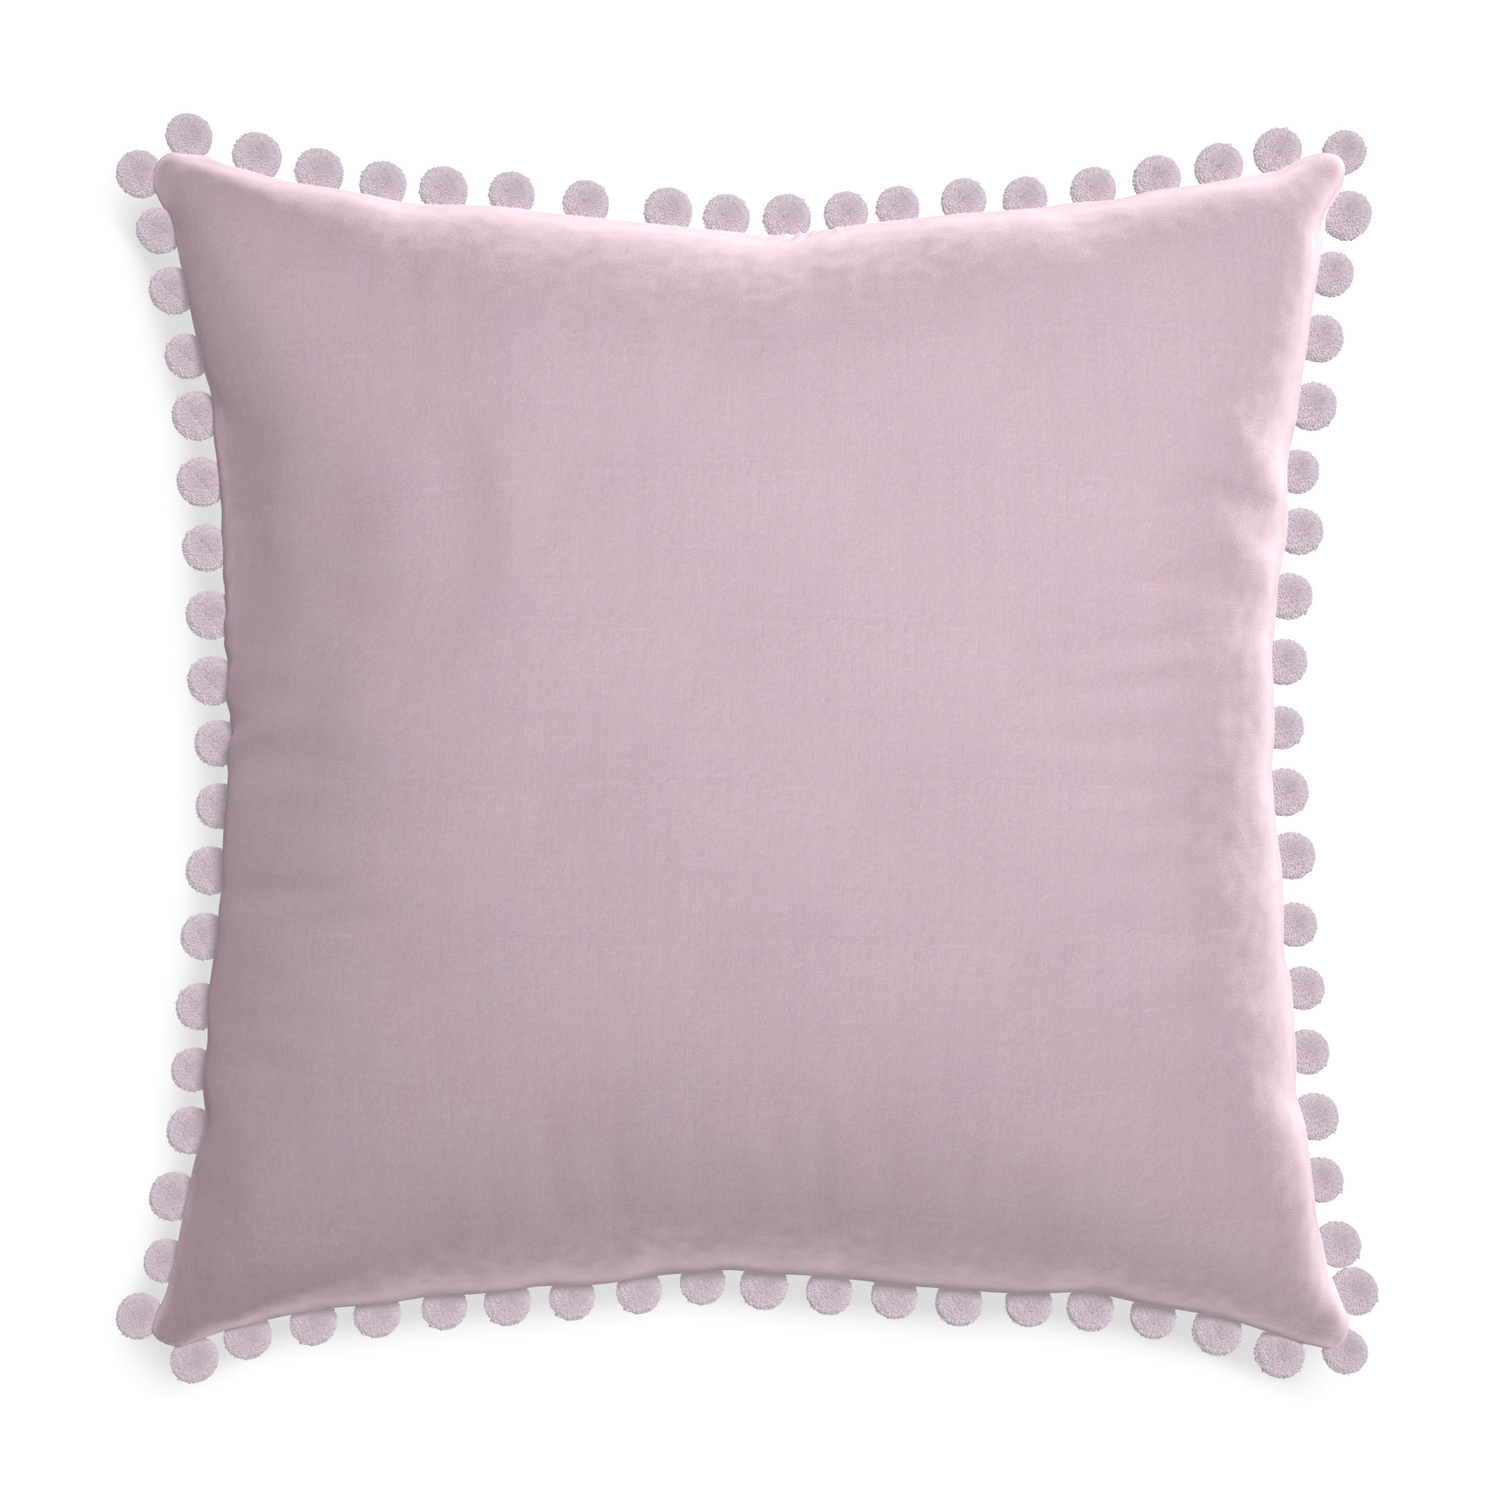 square lilac velvet pillow with lilac pom poms